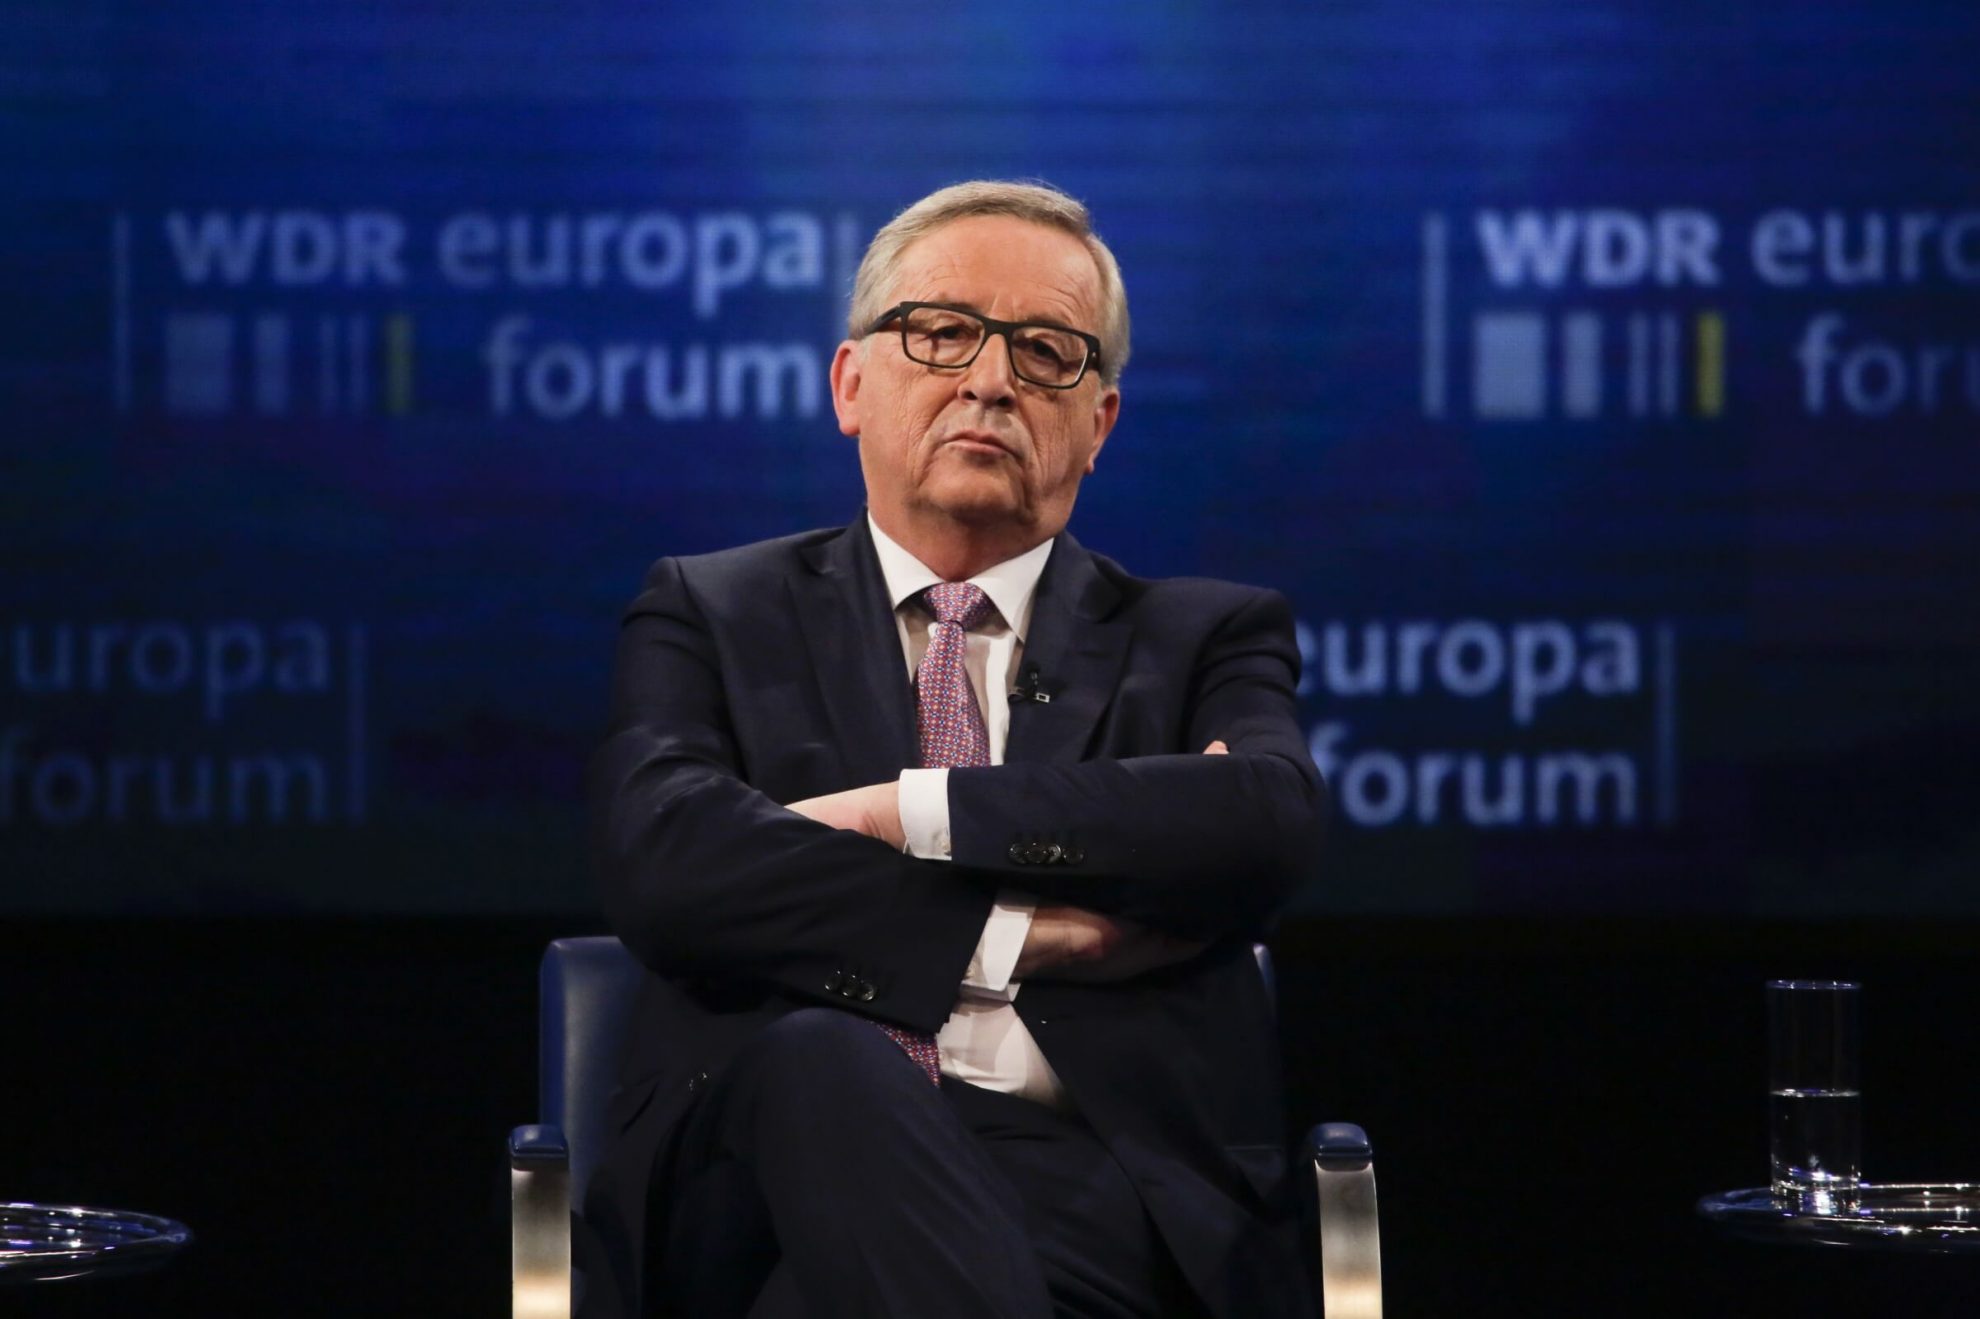 Derybos dėl prekybos negalės prasidėti tol, kol britai turės įsipareigojimų Europai, pareiškė Europos Komisijos pirmininkas Jeanas-Claude'as Junckeris.